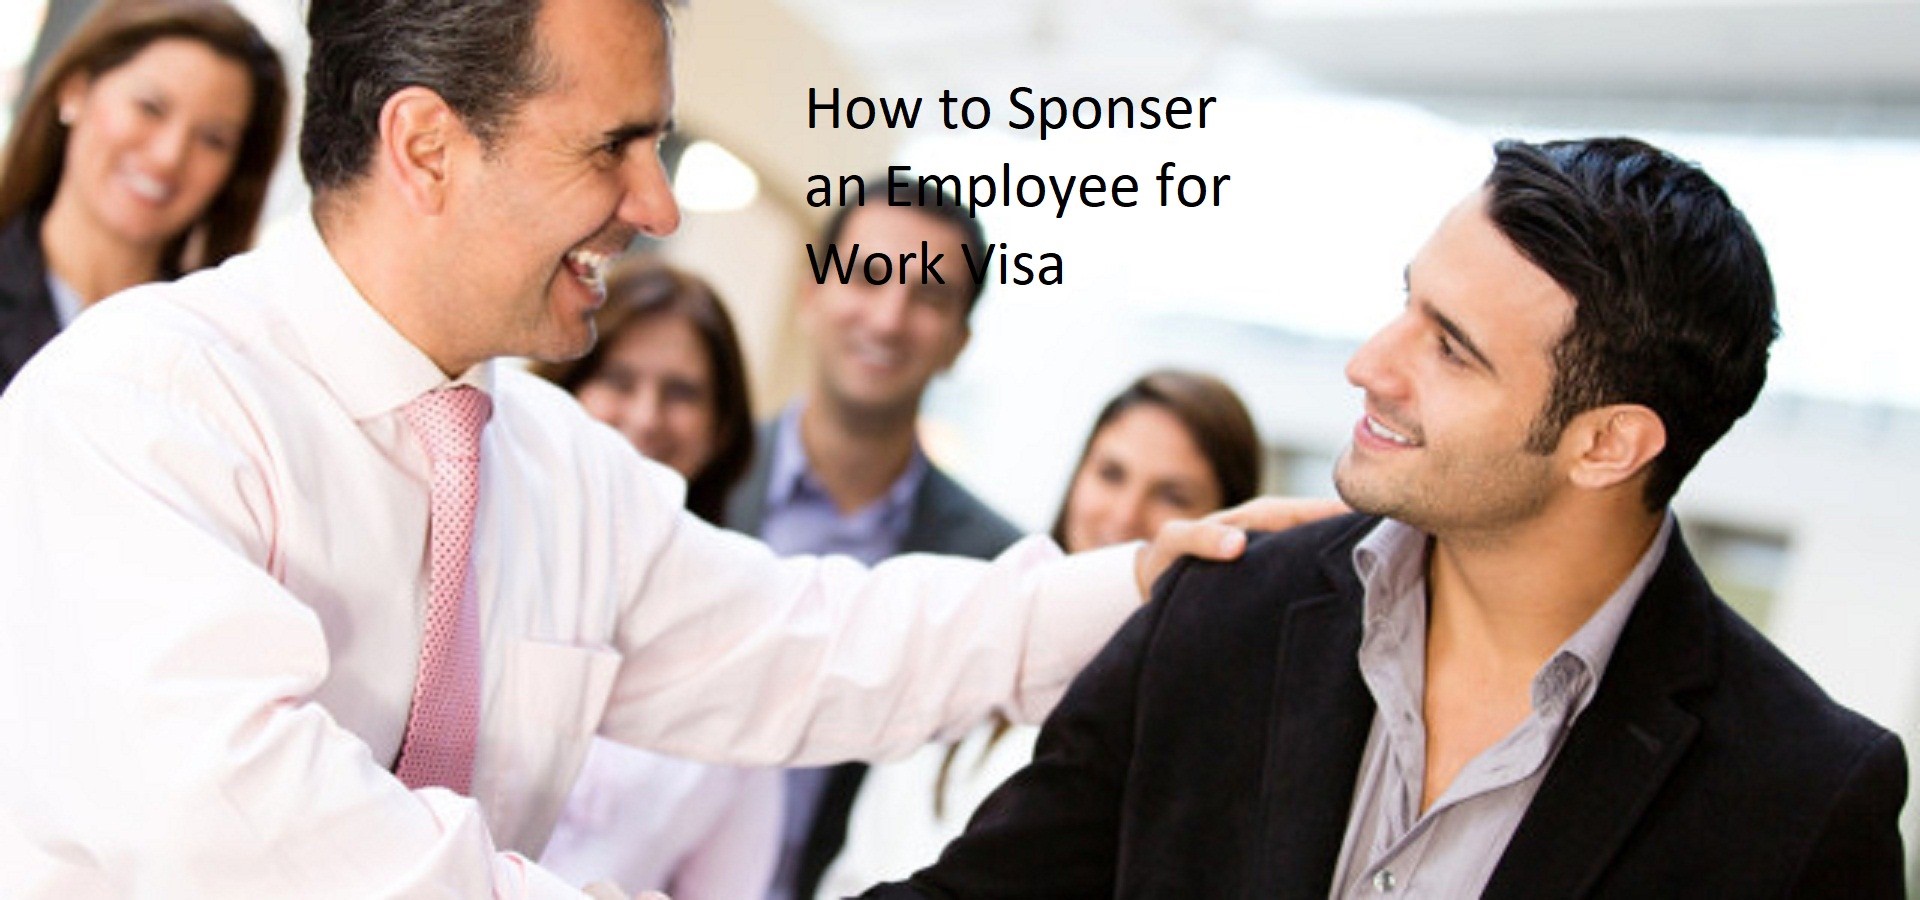 Sponsor an Employee for Work Visa